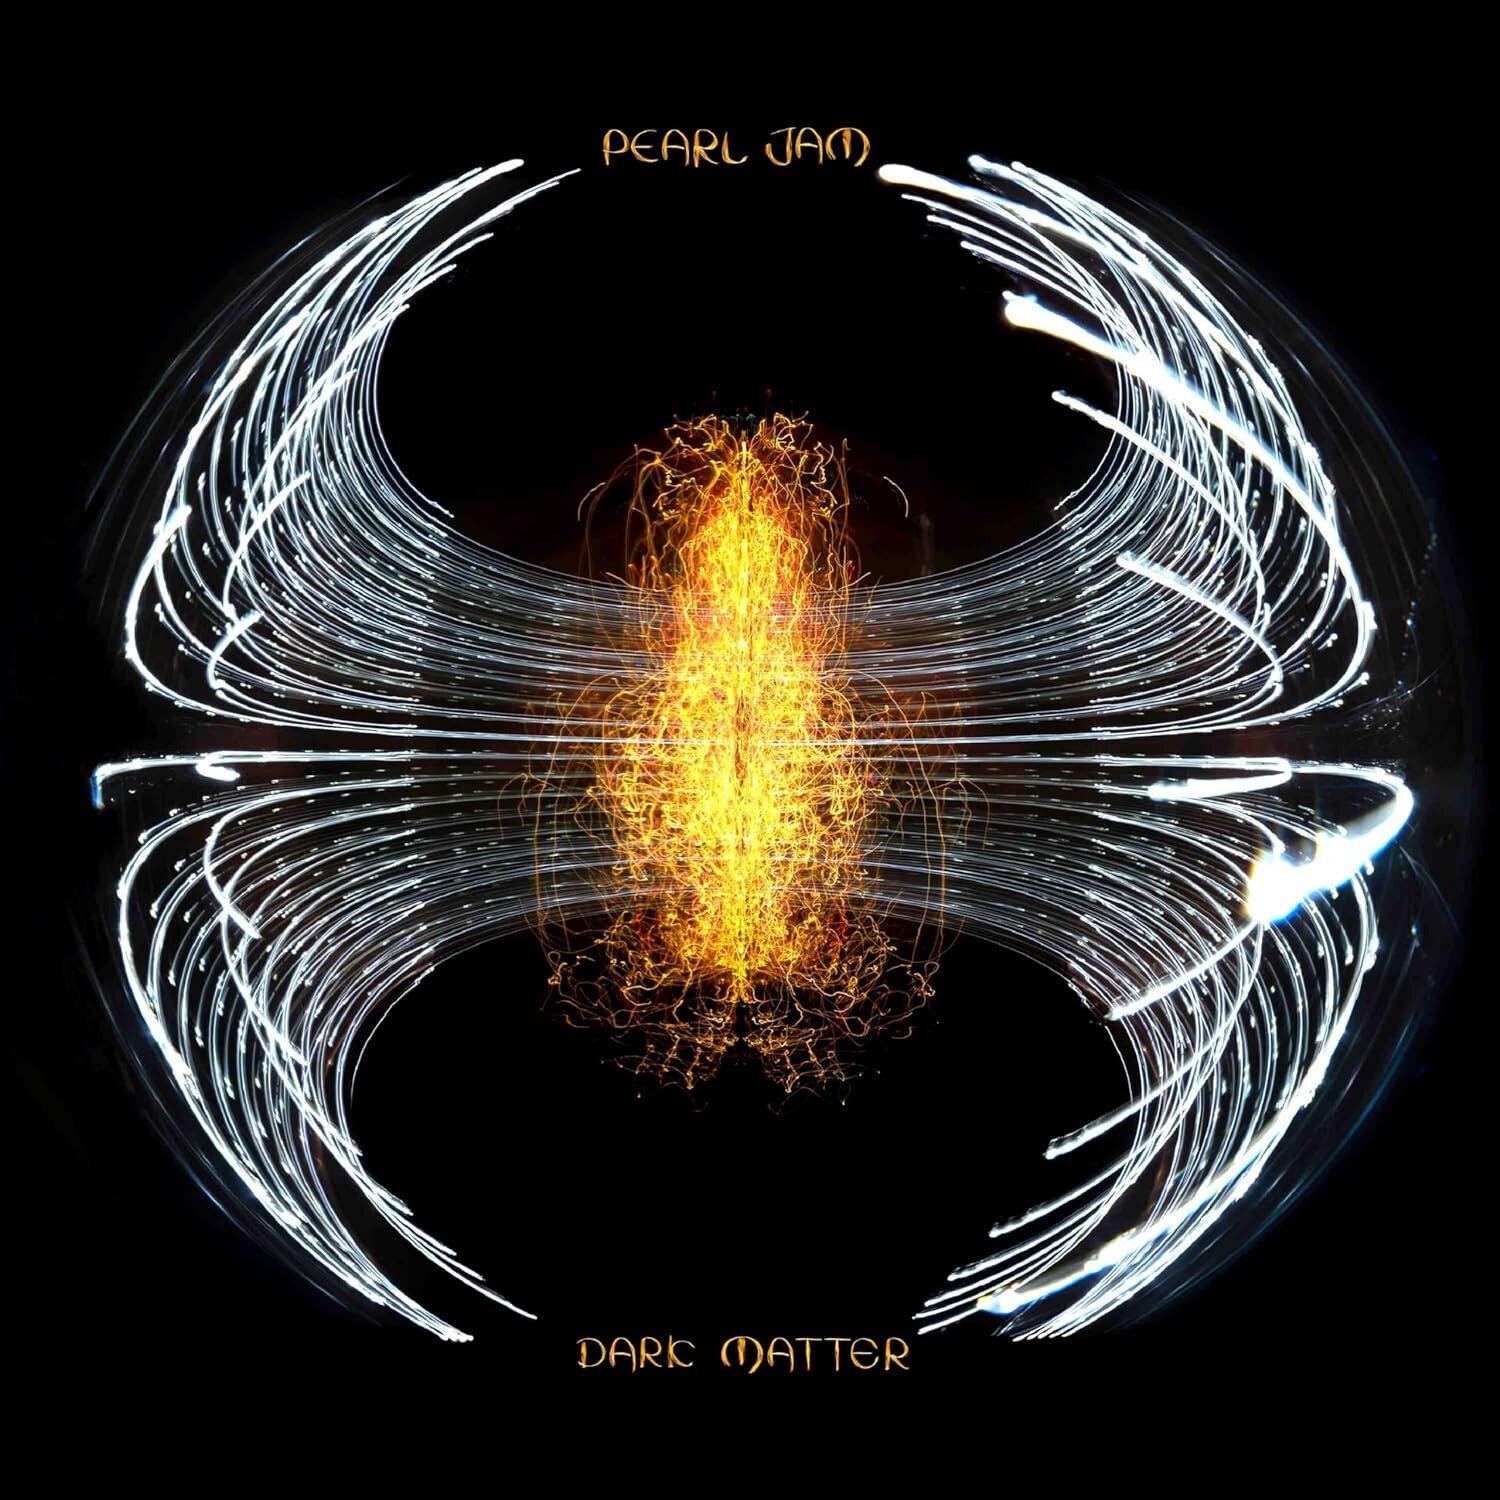 Musik-CD Pearl Jam - Dark Matter (CD)